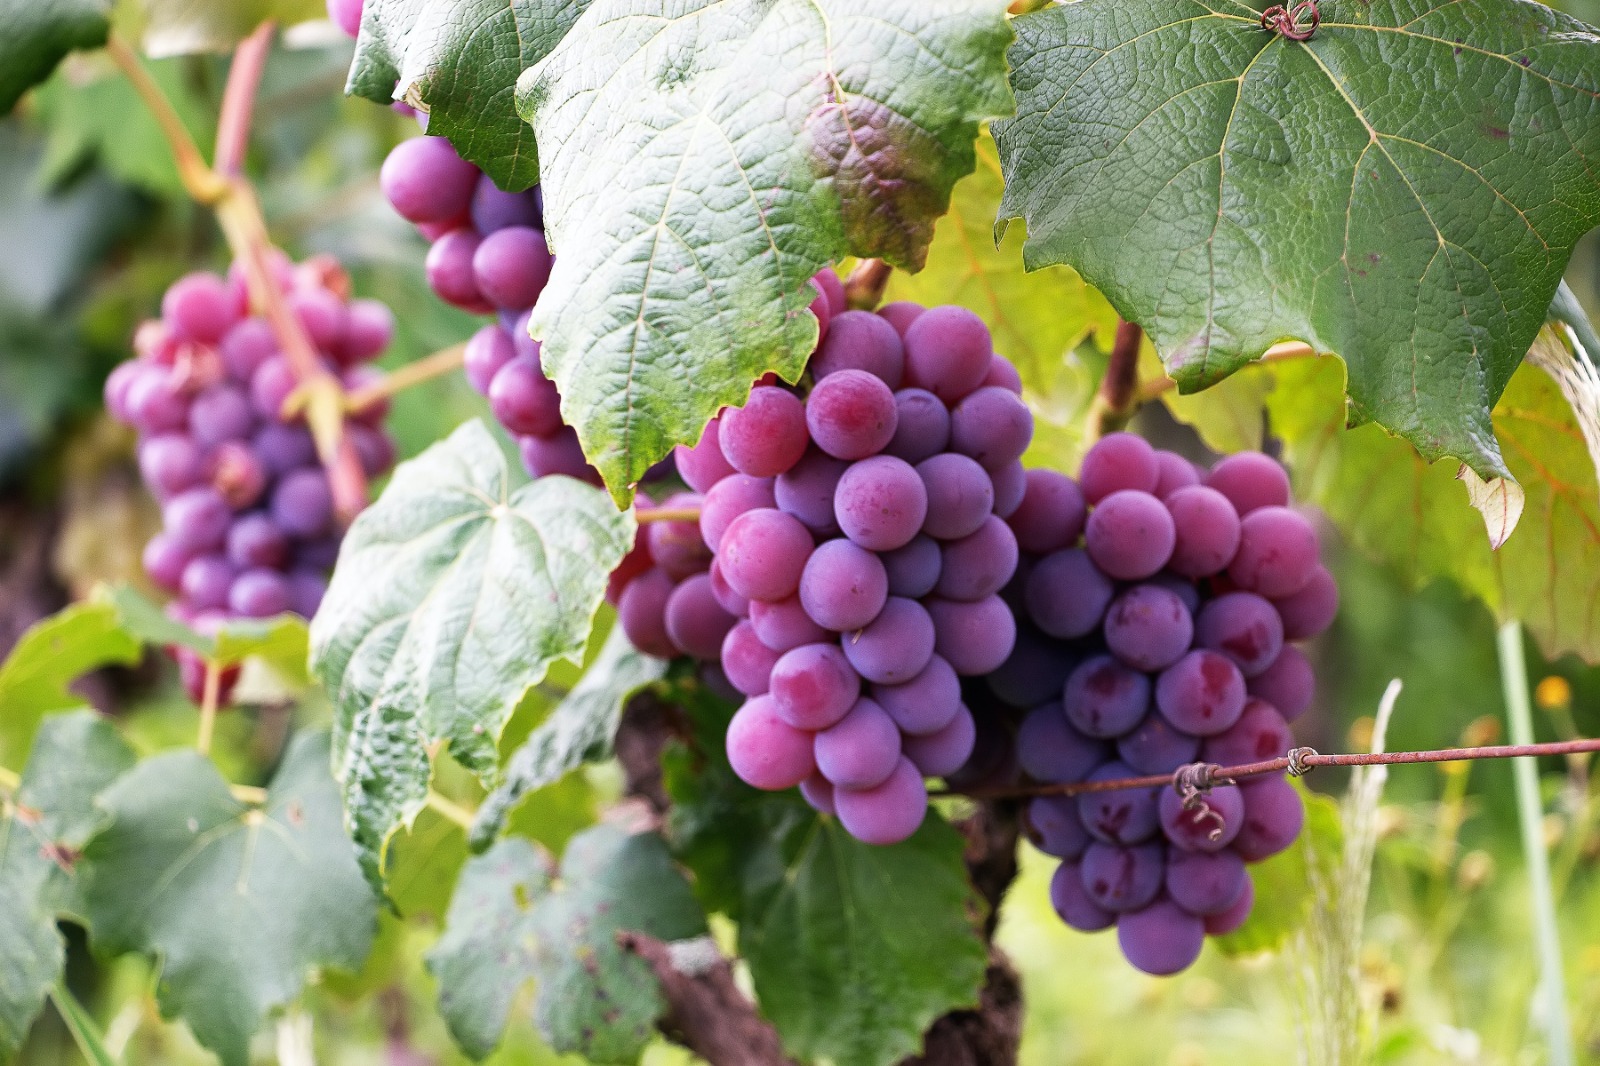 Reife Weintrauben sind meist kräftig in ihrer Farbe